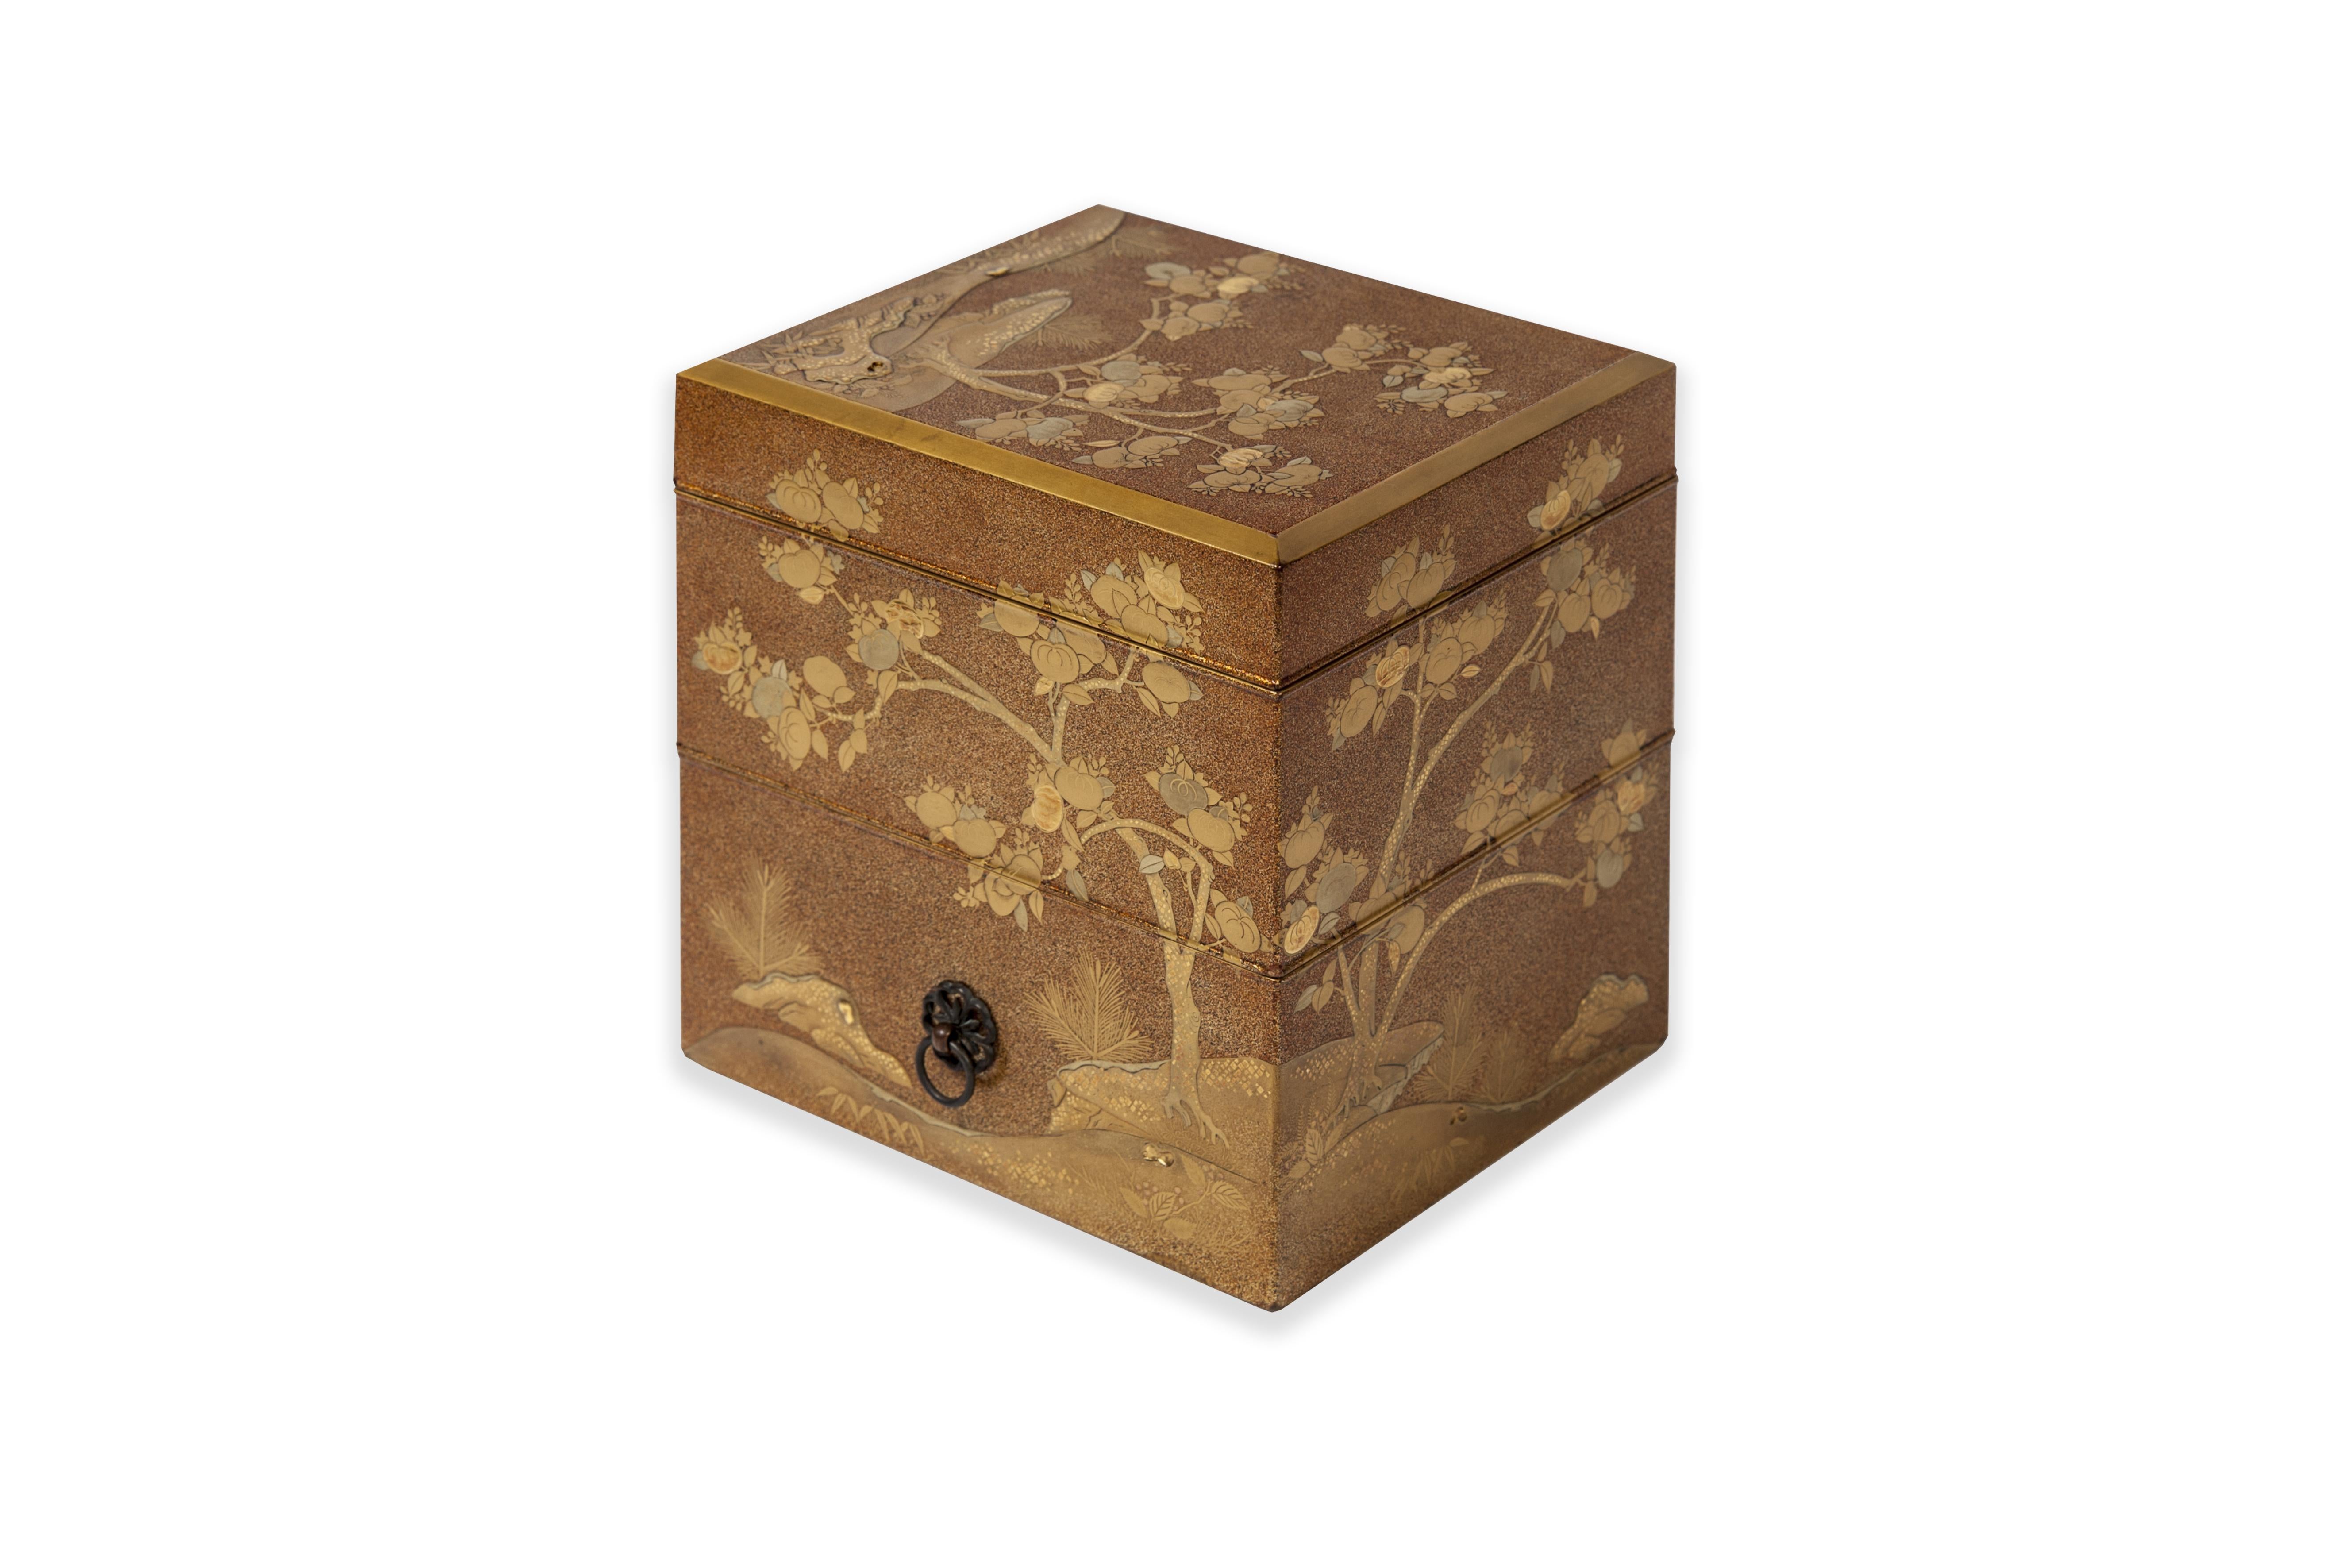 Boîte Tebako à trois compartiments en laque dorée et nashi-ji, décorée de laque dorée, rouge et kirigane, de feuilles de kaki dorées, parmi des rochers. Les compartiments sont de taille croissante à partir du haut. La décoration est en continuité.